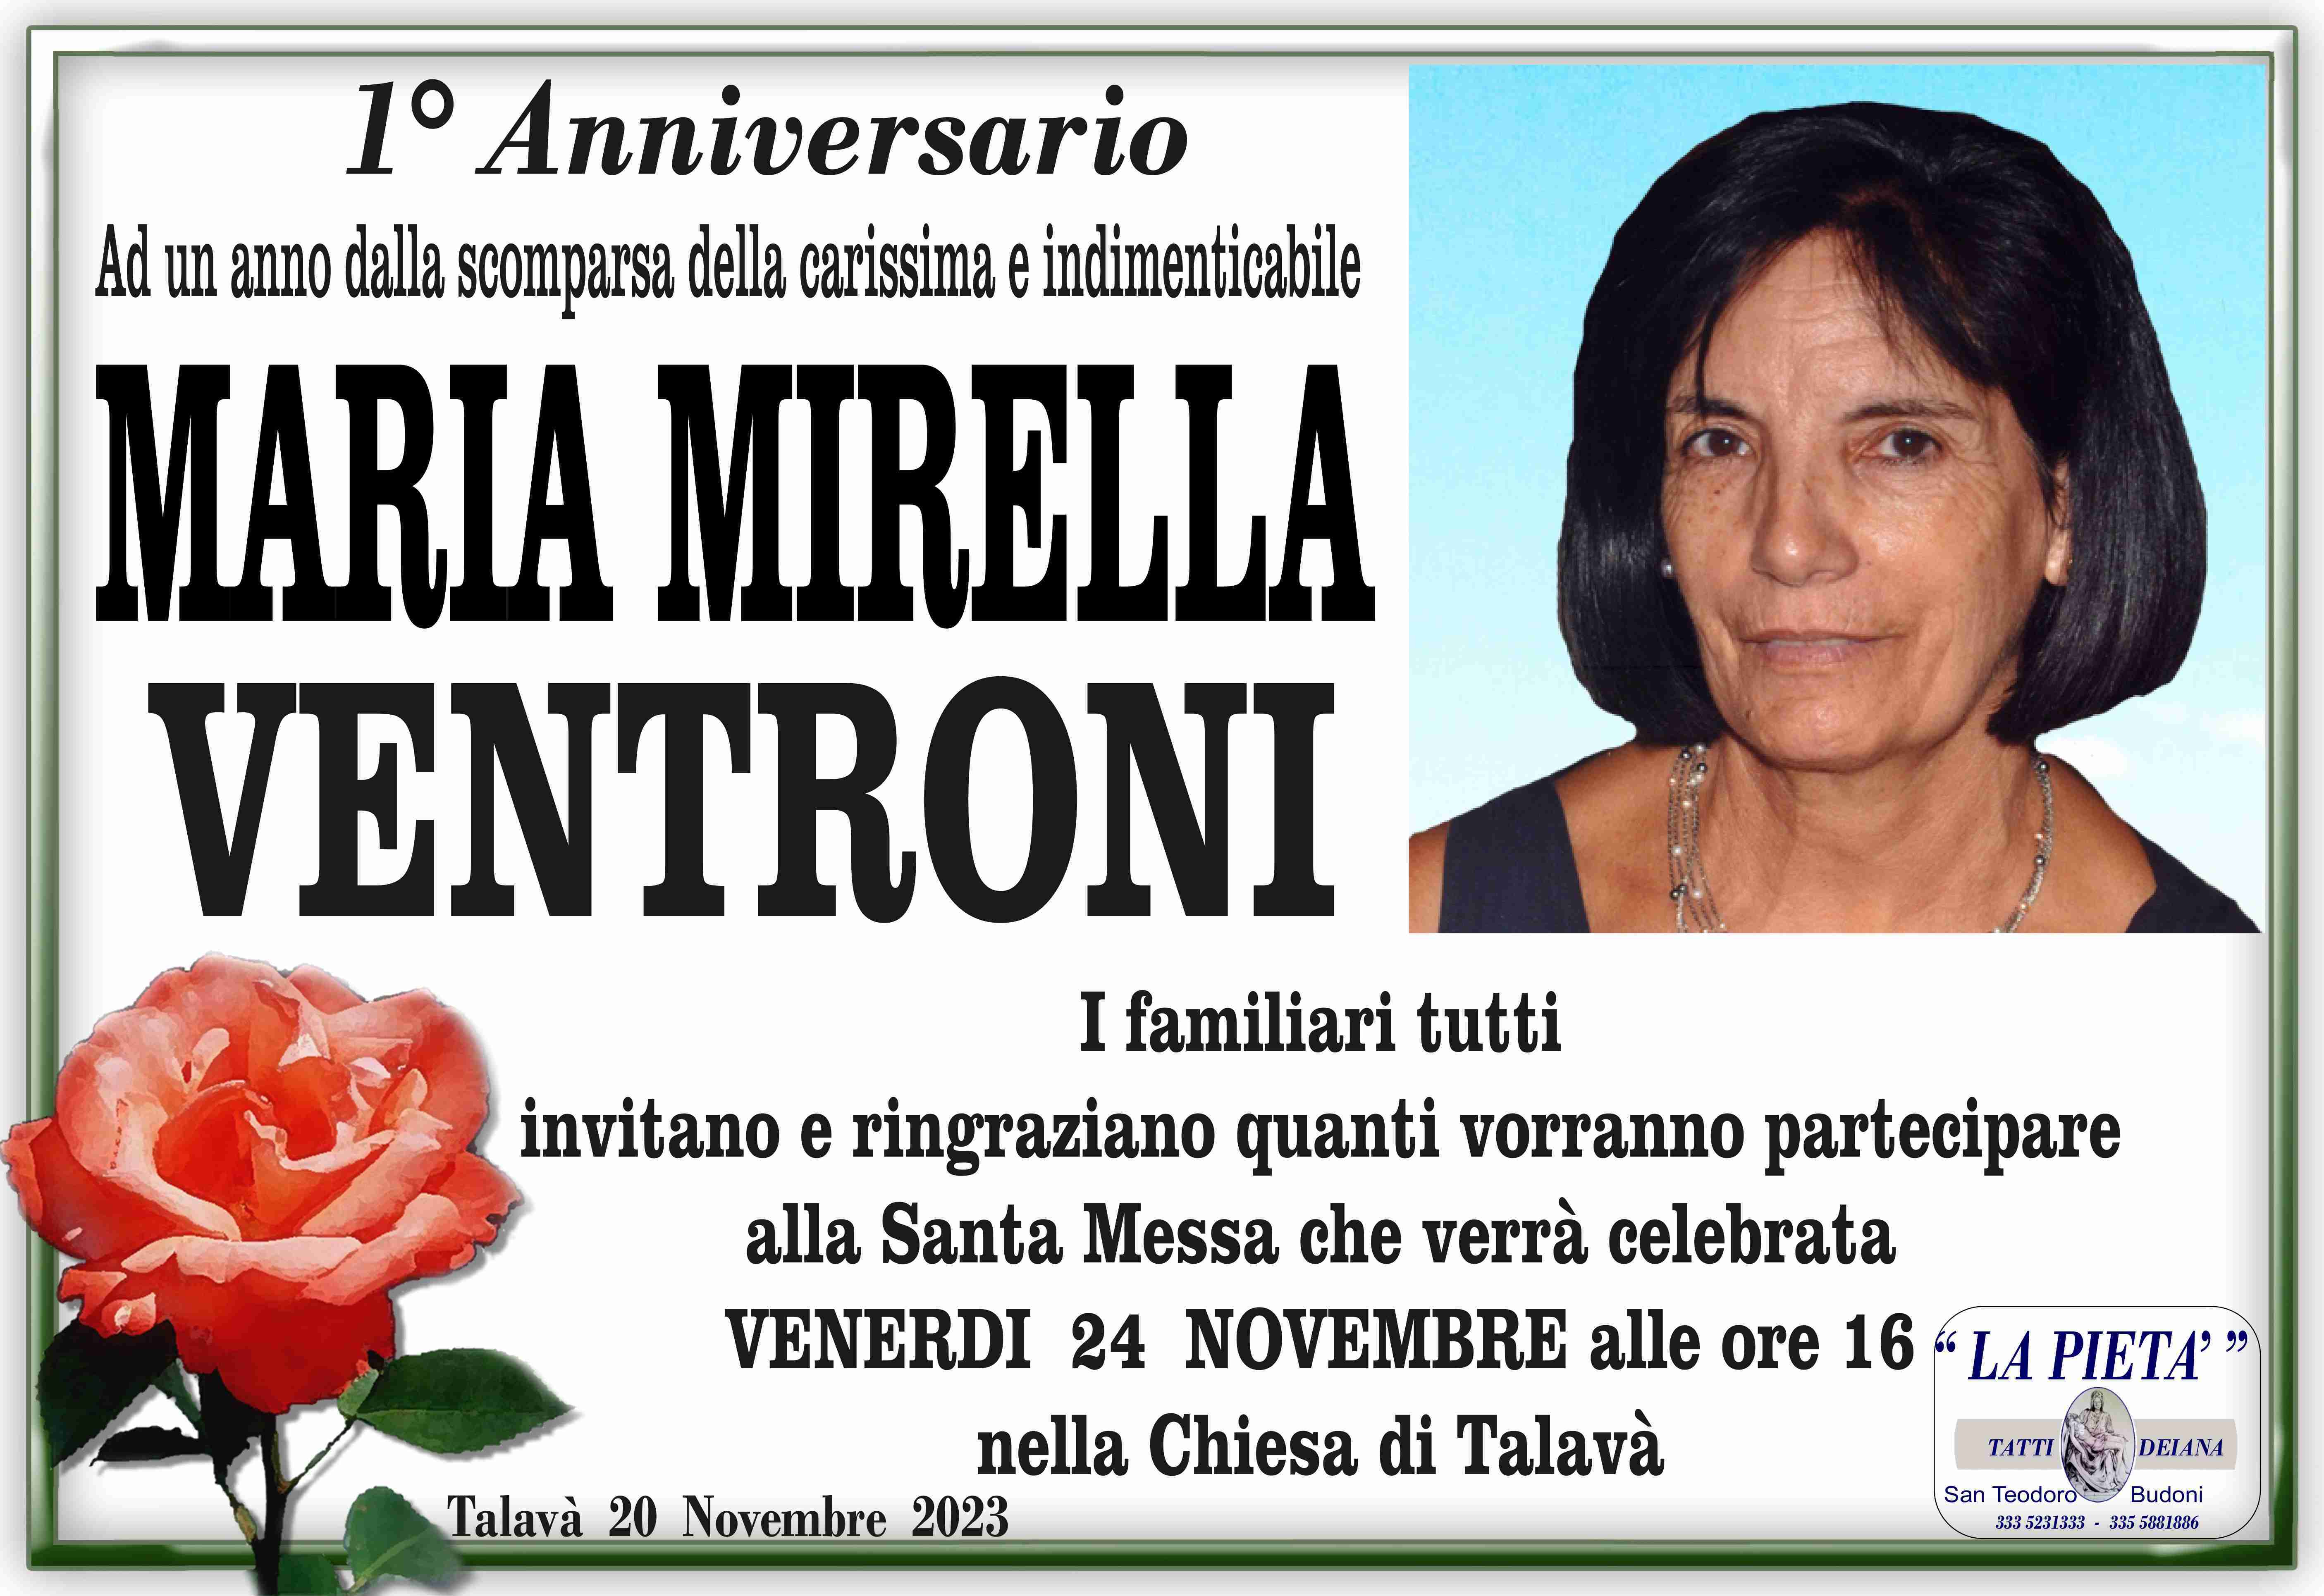 Maria Mirella Ventroni